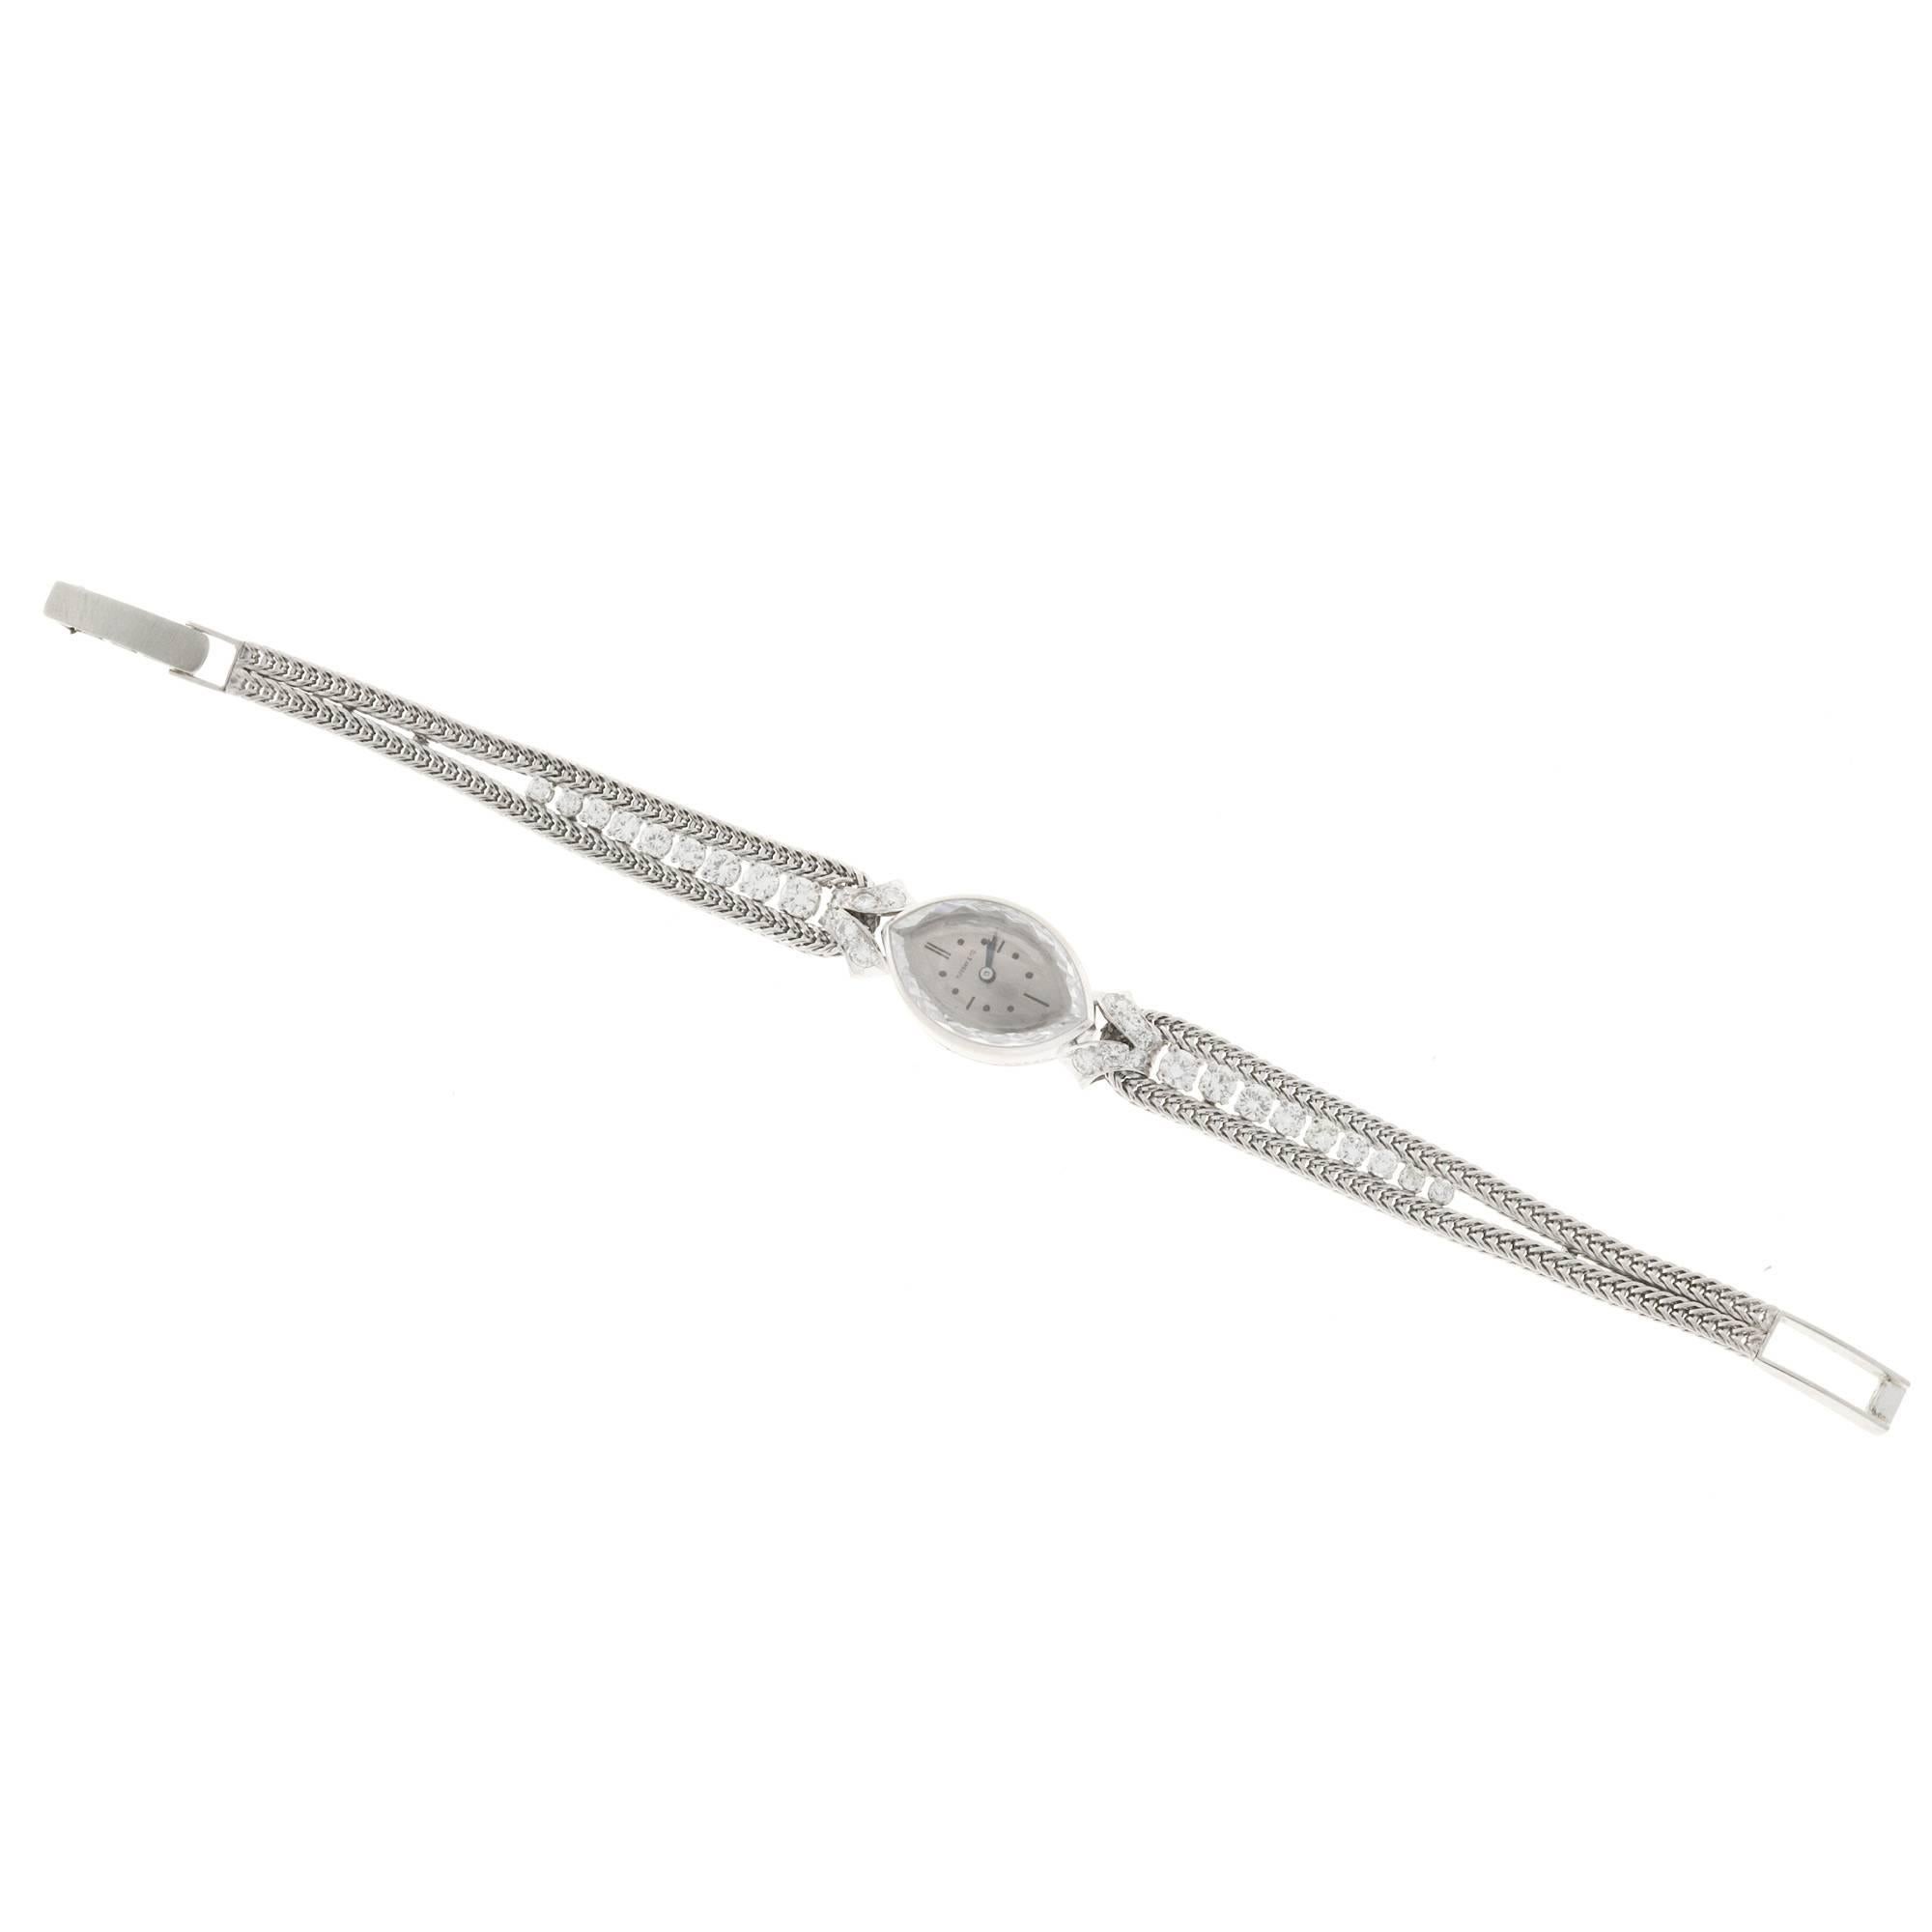 Tiffany & Co. Lady's Diamond Manual Wind Wristwatch 1